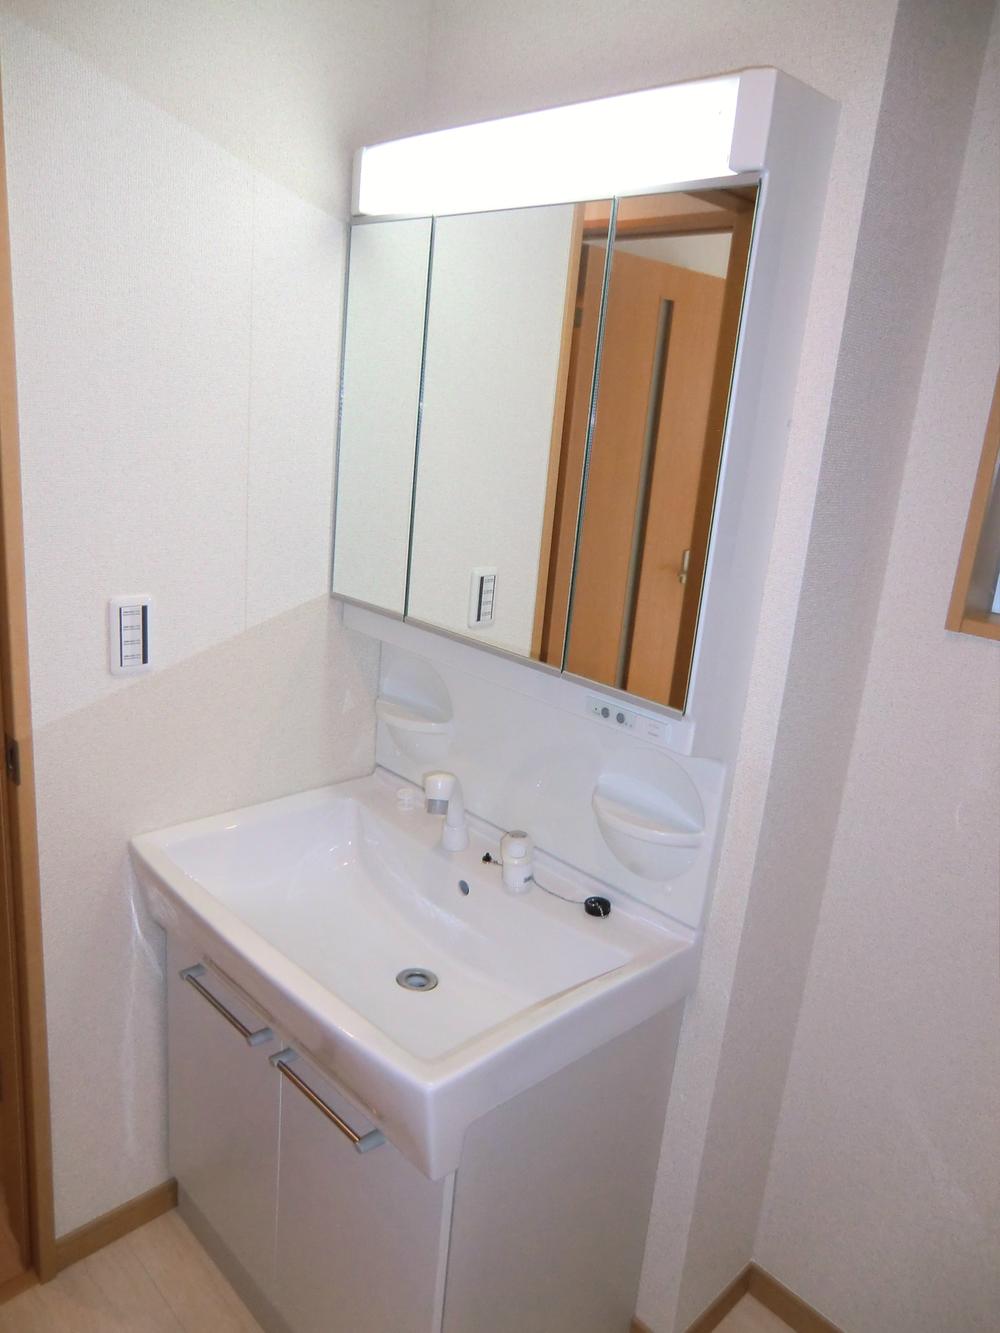 Wash basin, toilet. ◇ wash basin ◇  Three-sided mirror Shampoo dresser